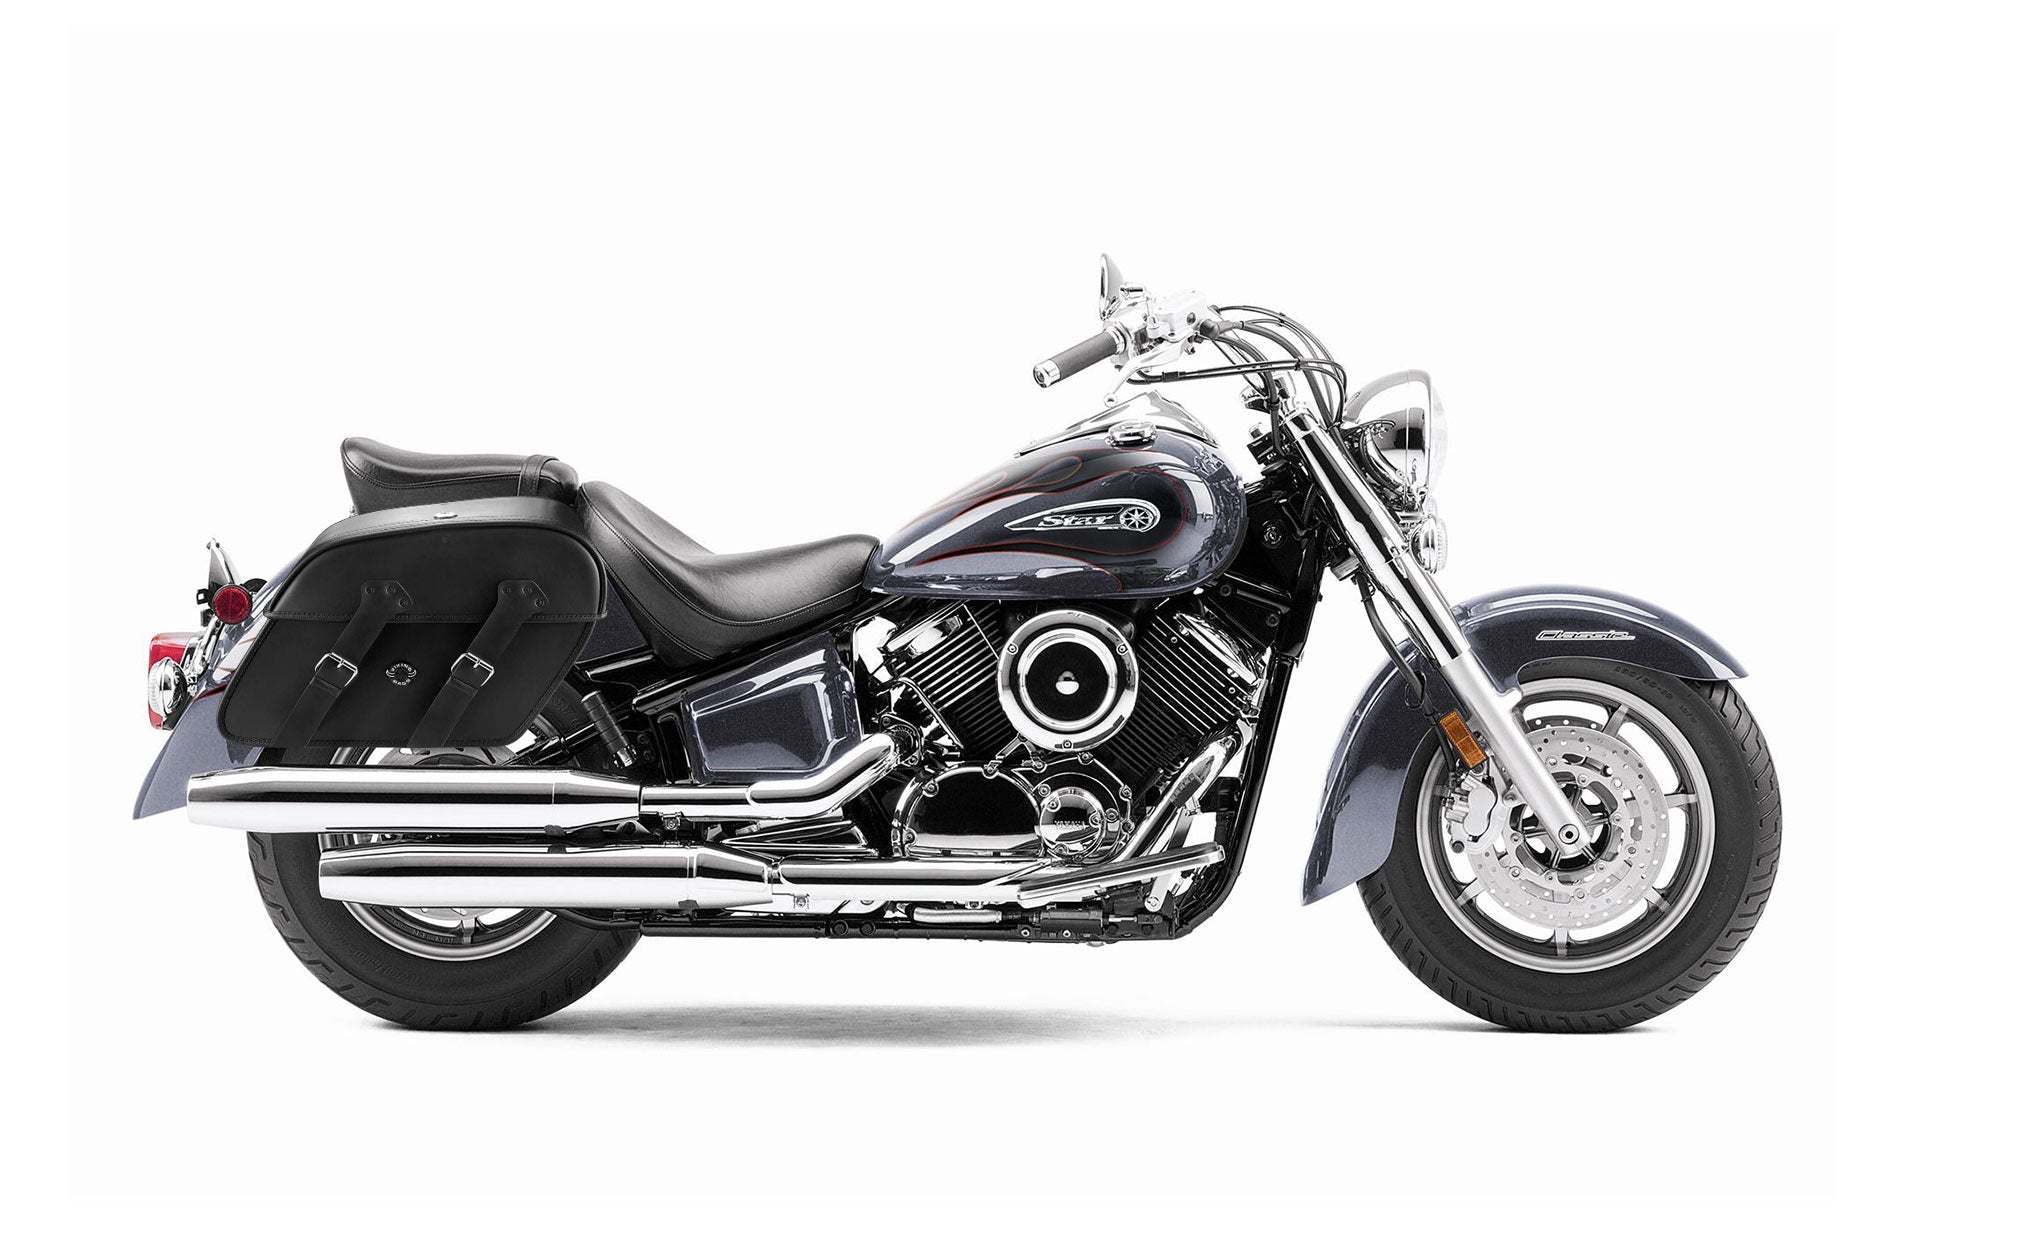 Viking Raven Extra Large Yamaha V Star 1100 Classic Xvs11A Leather Motorcycle Saddlebags on Bike Photo @expand